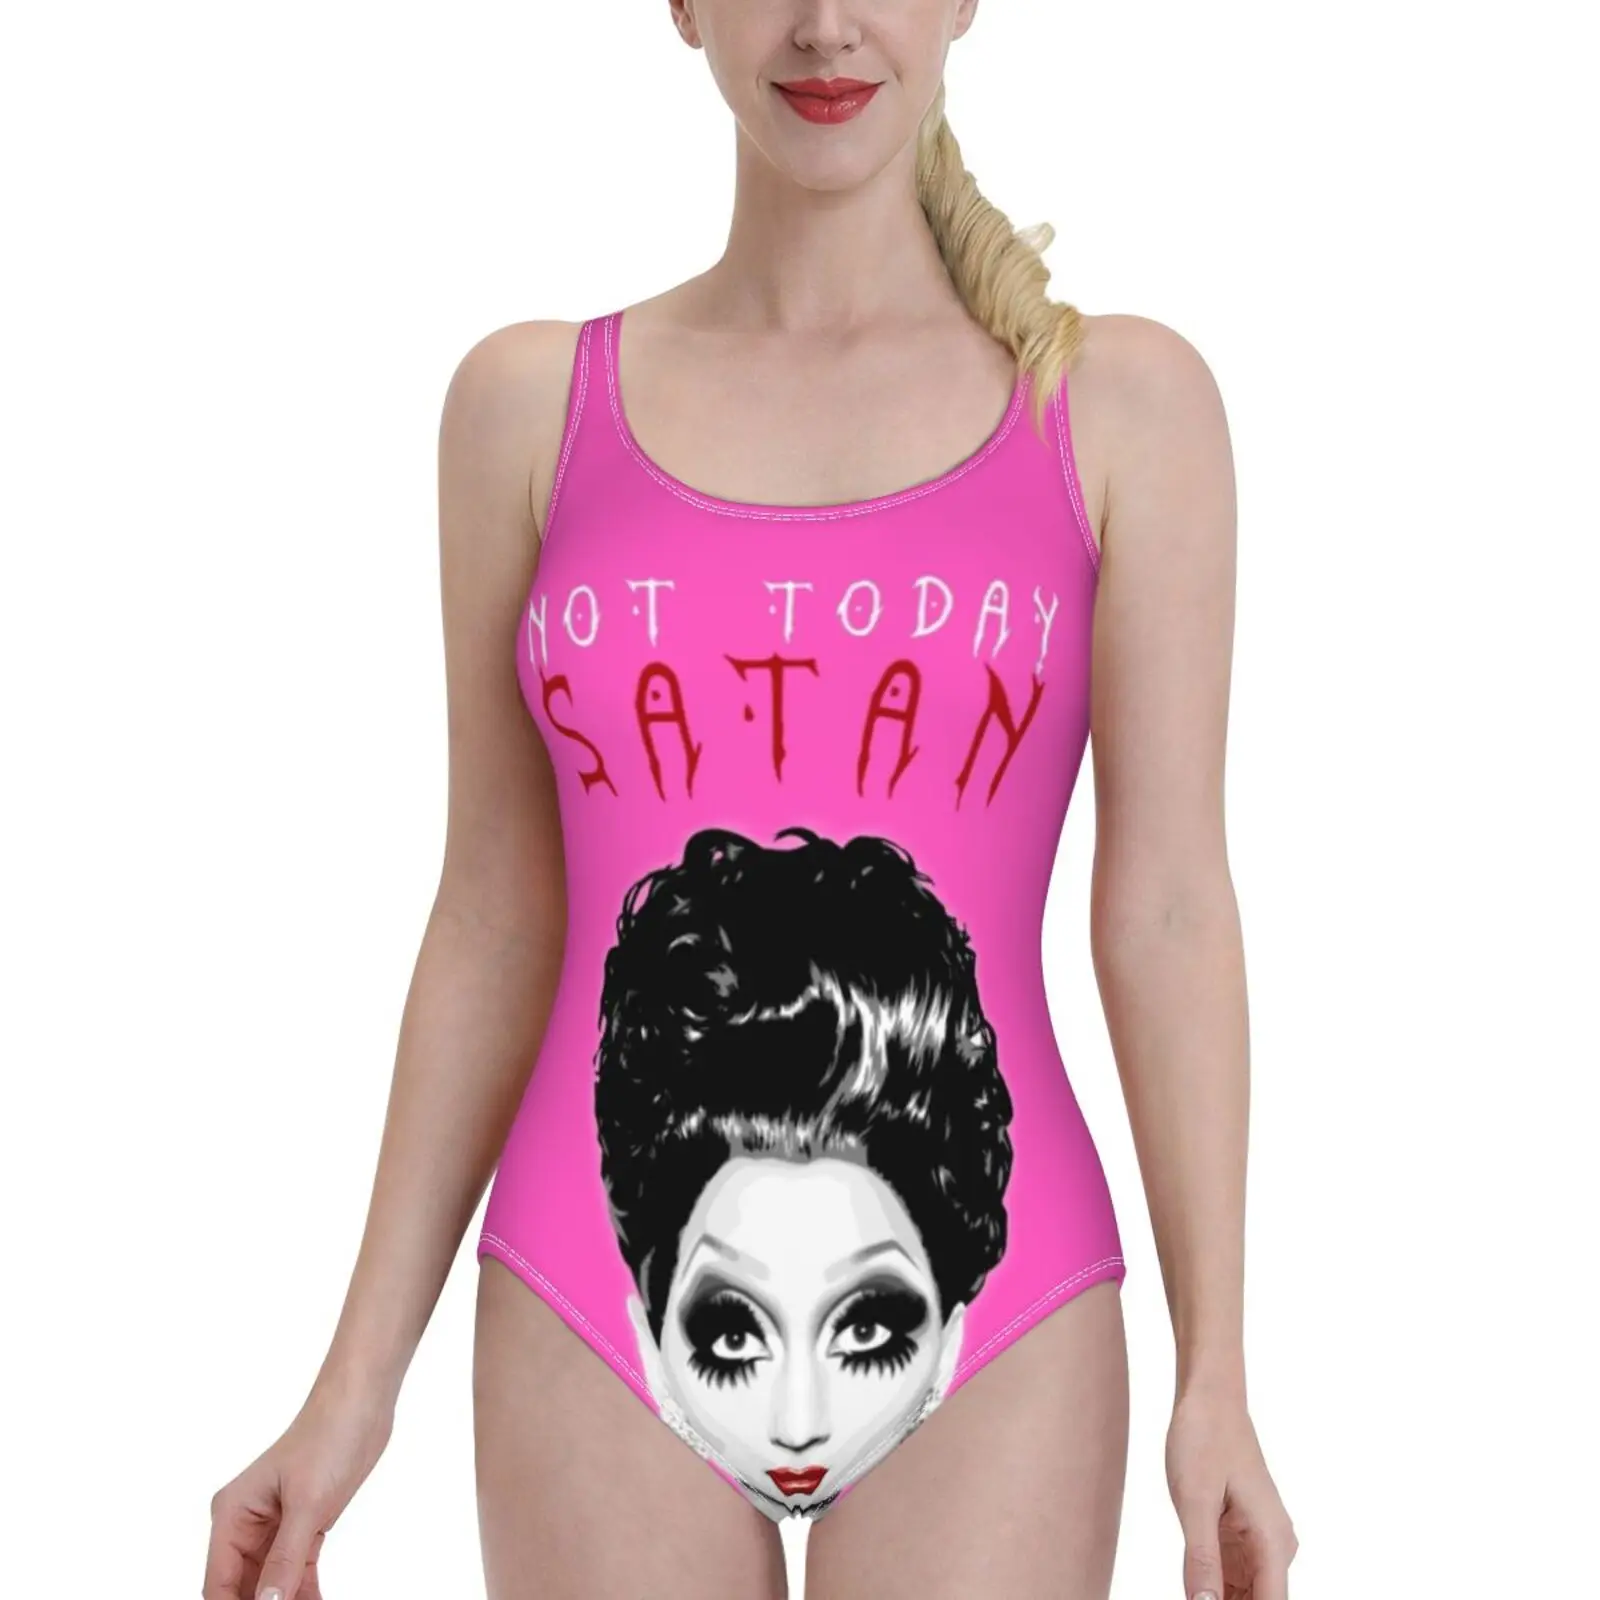 

Женский слитный купальник Bianca Del Rio, пикантная пляжная одежда с открытой спиной, не сегодня, сатана, летние купальные костюмы